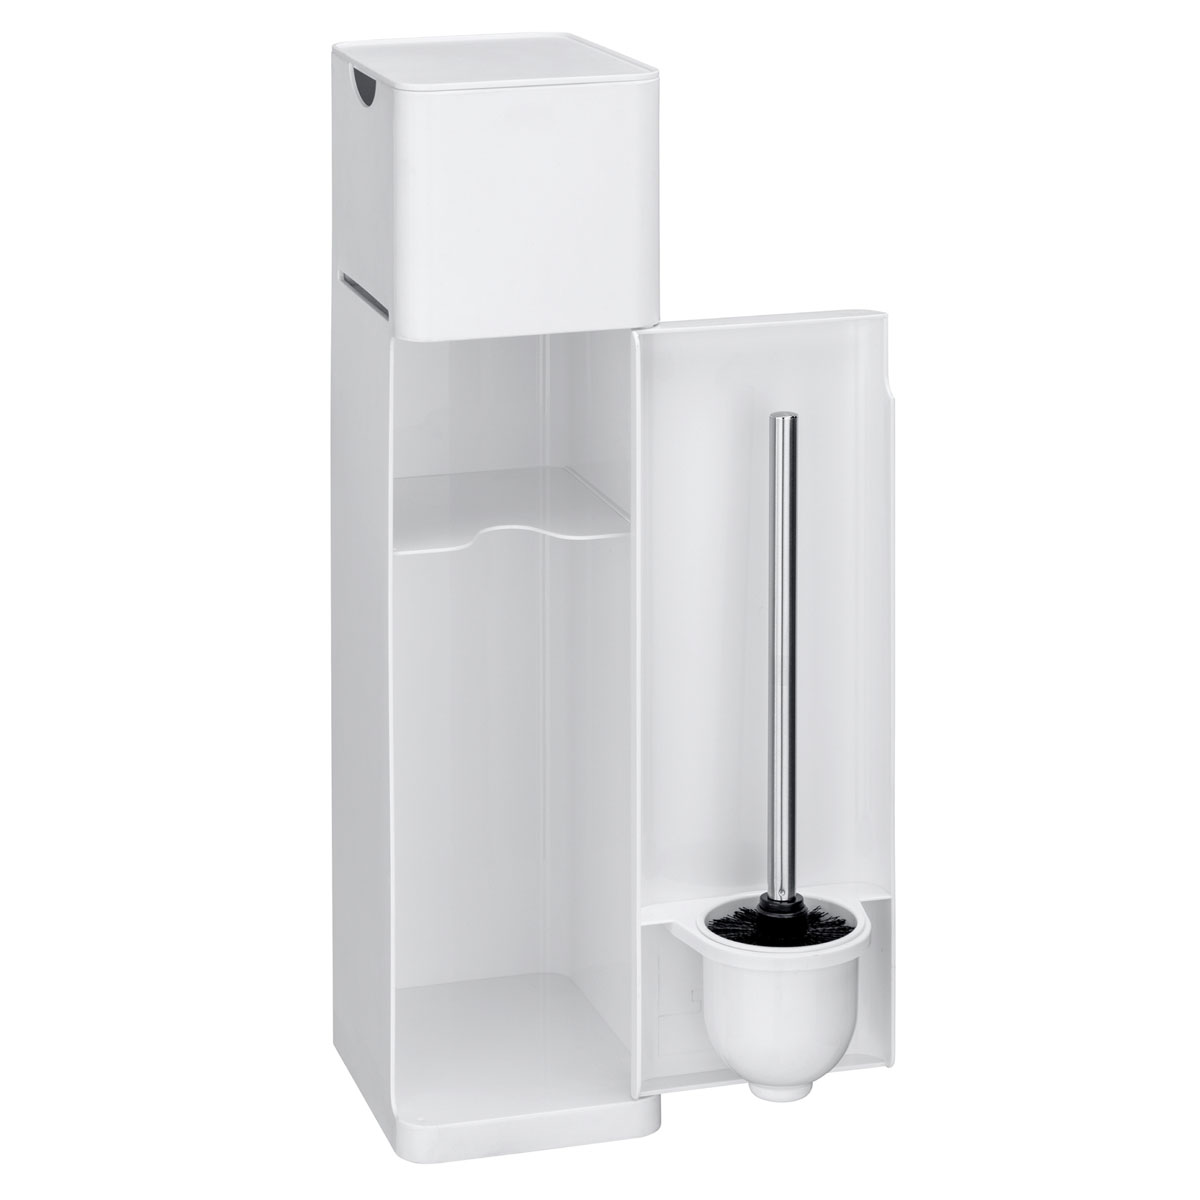 und matt 6 Stand | Ersatzrollenhalter Imon Toilettenpapierhalter Wenko 514825 1 Stauraumfächer Ablage integrierter WC-Bürstenhalter Weiß WC-Garnitur in